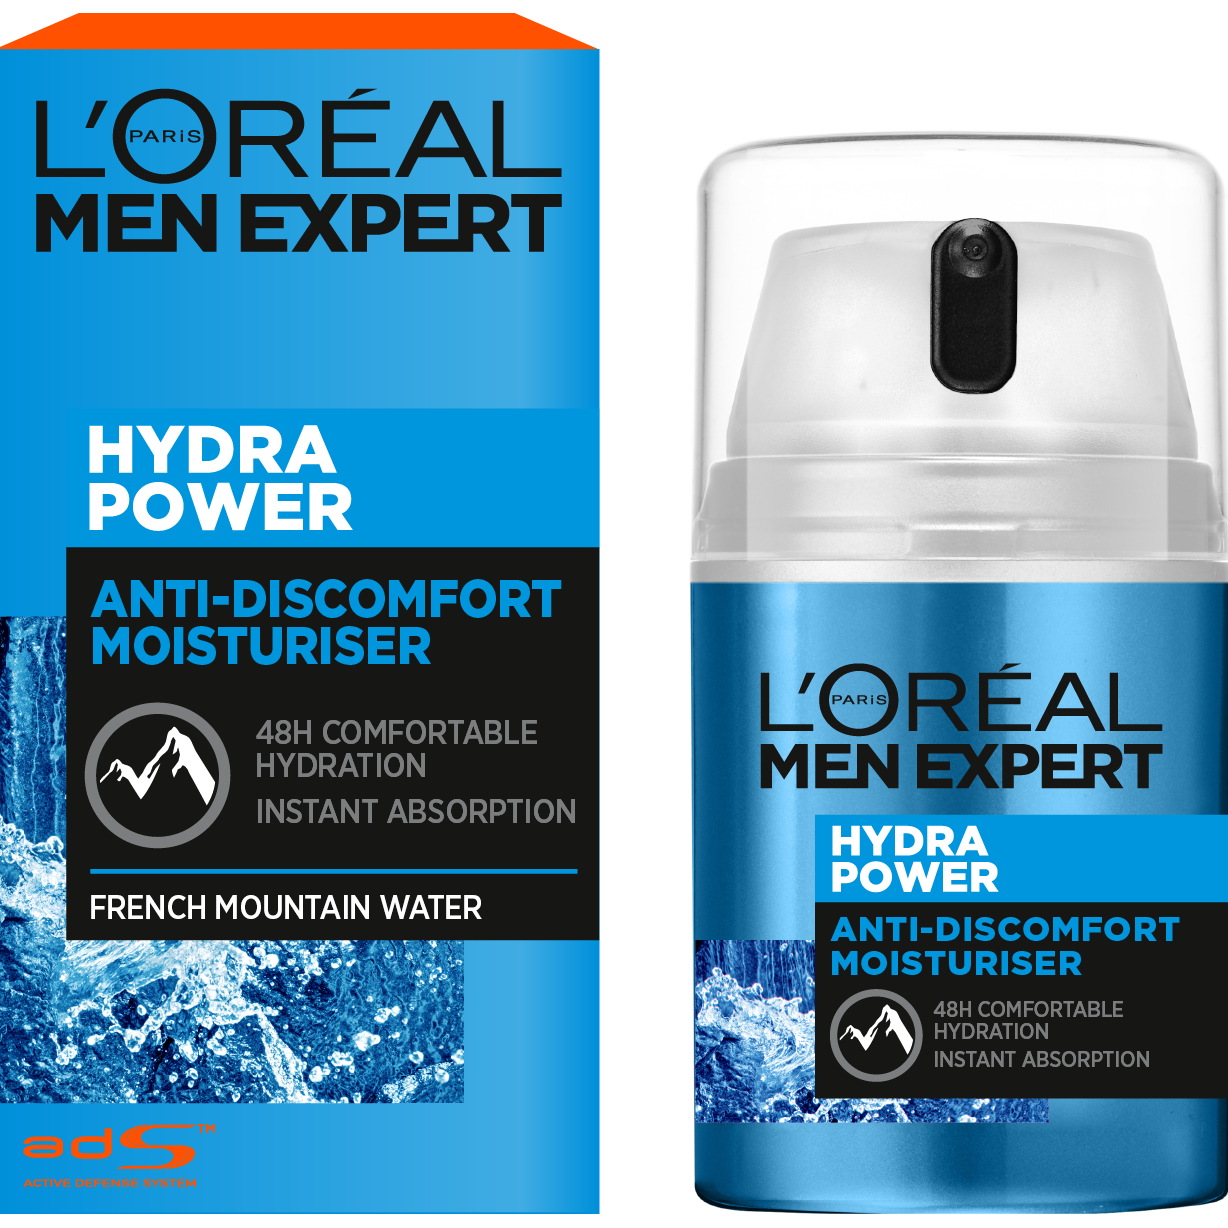 Зволожуючий засіб L'oreal Paris Men Expert Hydra Power з освіжаючим ефектом для обличчя, 50 мл - фото 2